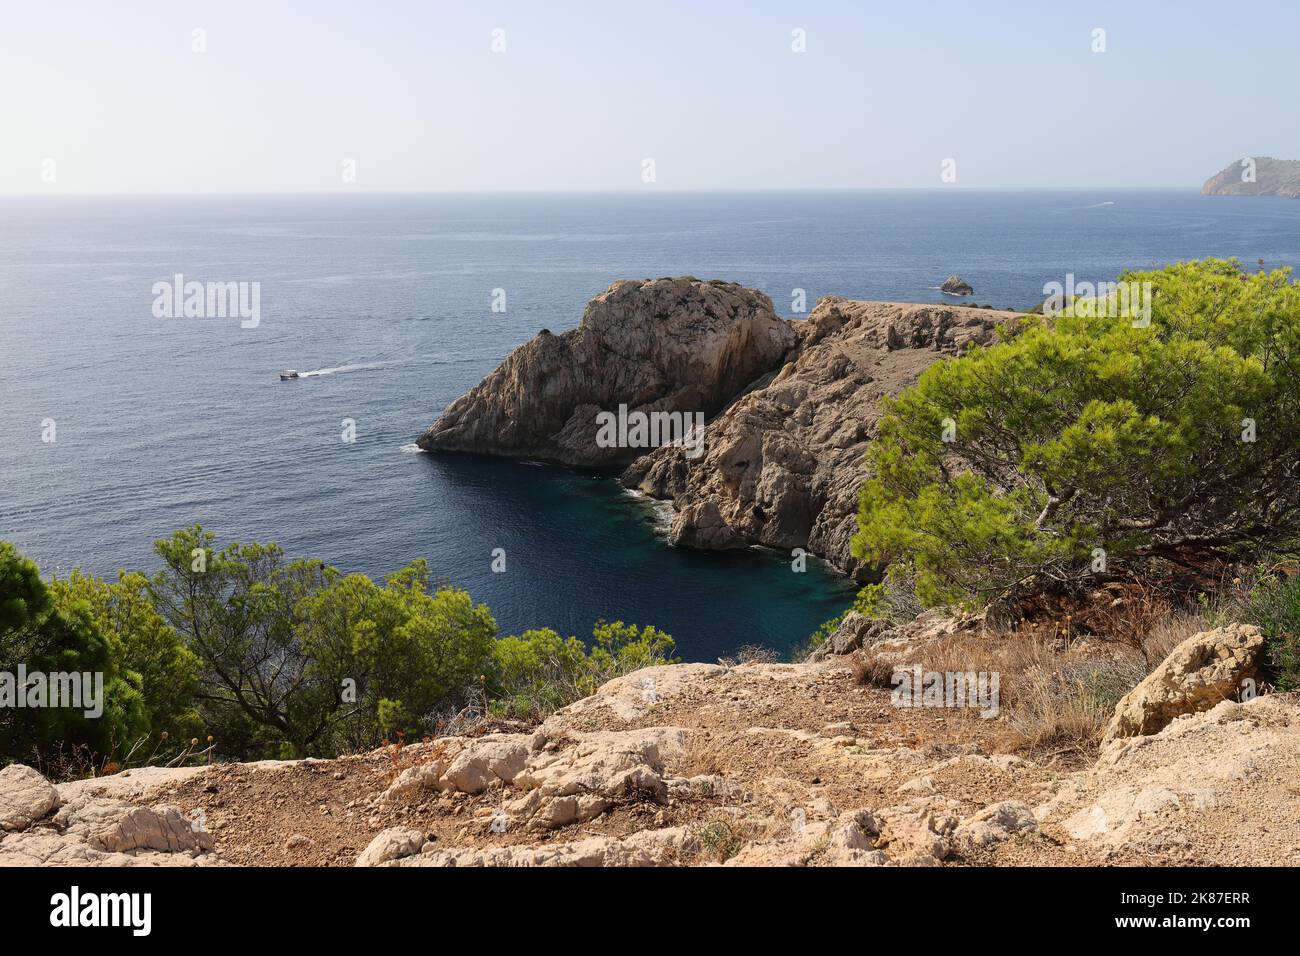 Vue dans une belle petite baie près de Cala Ratjada, Majorque avec des affleurements rocheux et une végétation verte en premier plan Banque D'Images